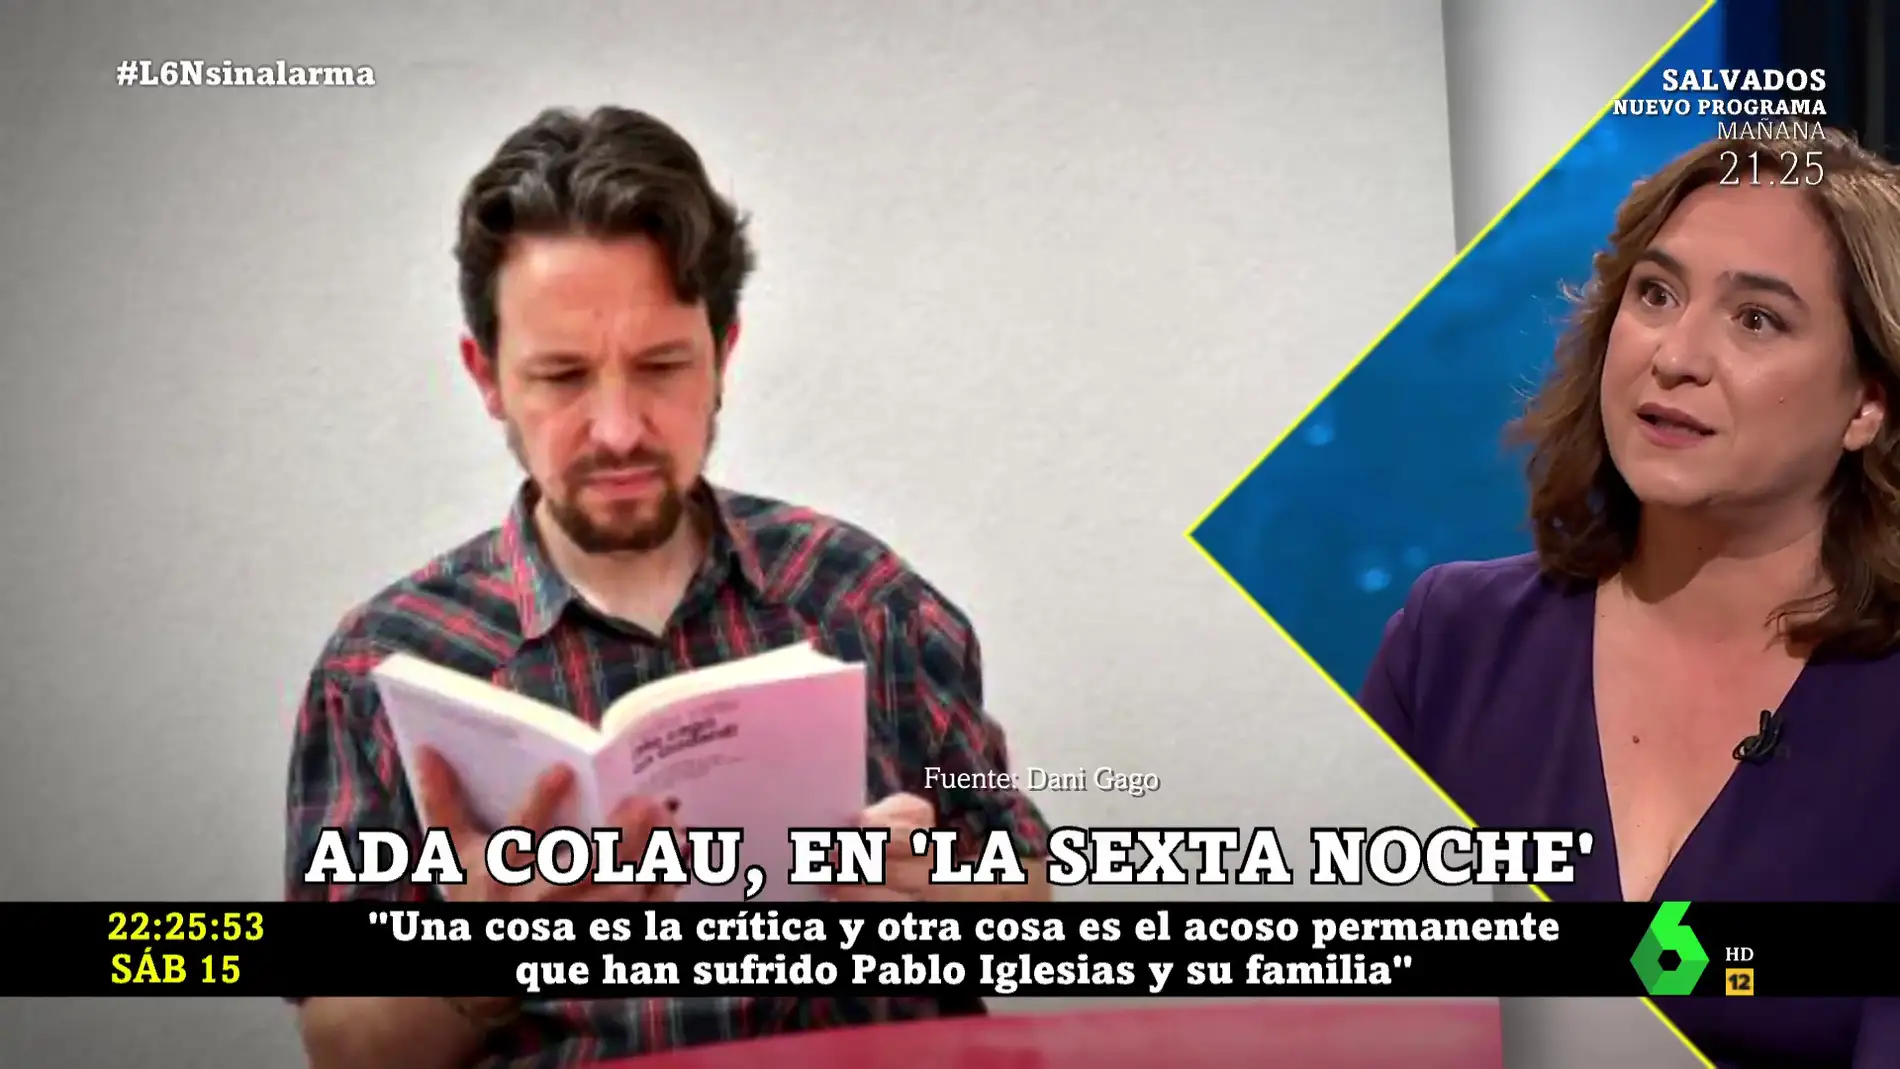 El alegato feminista con el que Ada Colau se niega a opinar sobre el corte de pelo de Pablo Iglesias